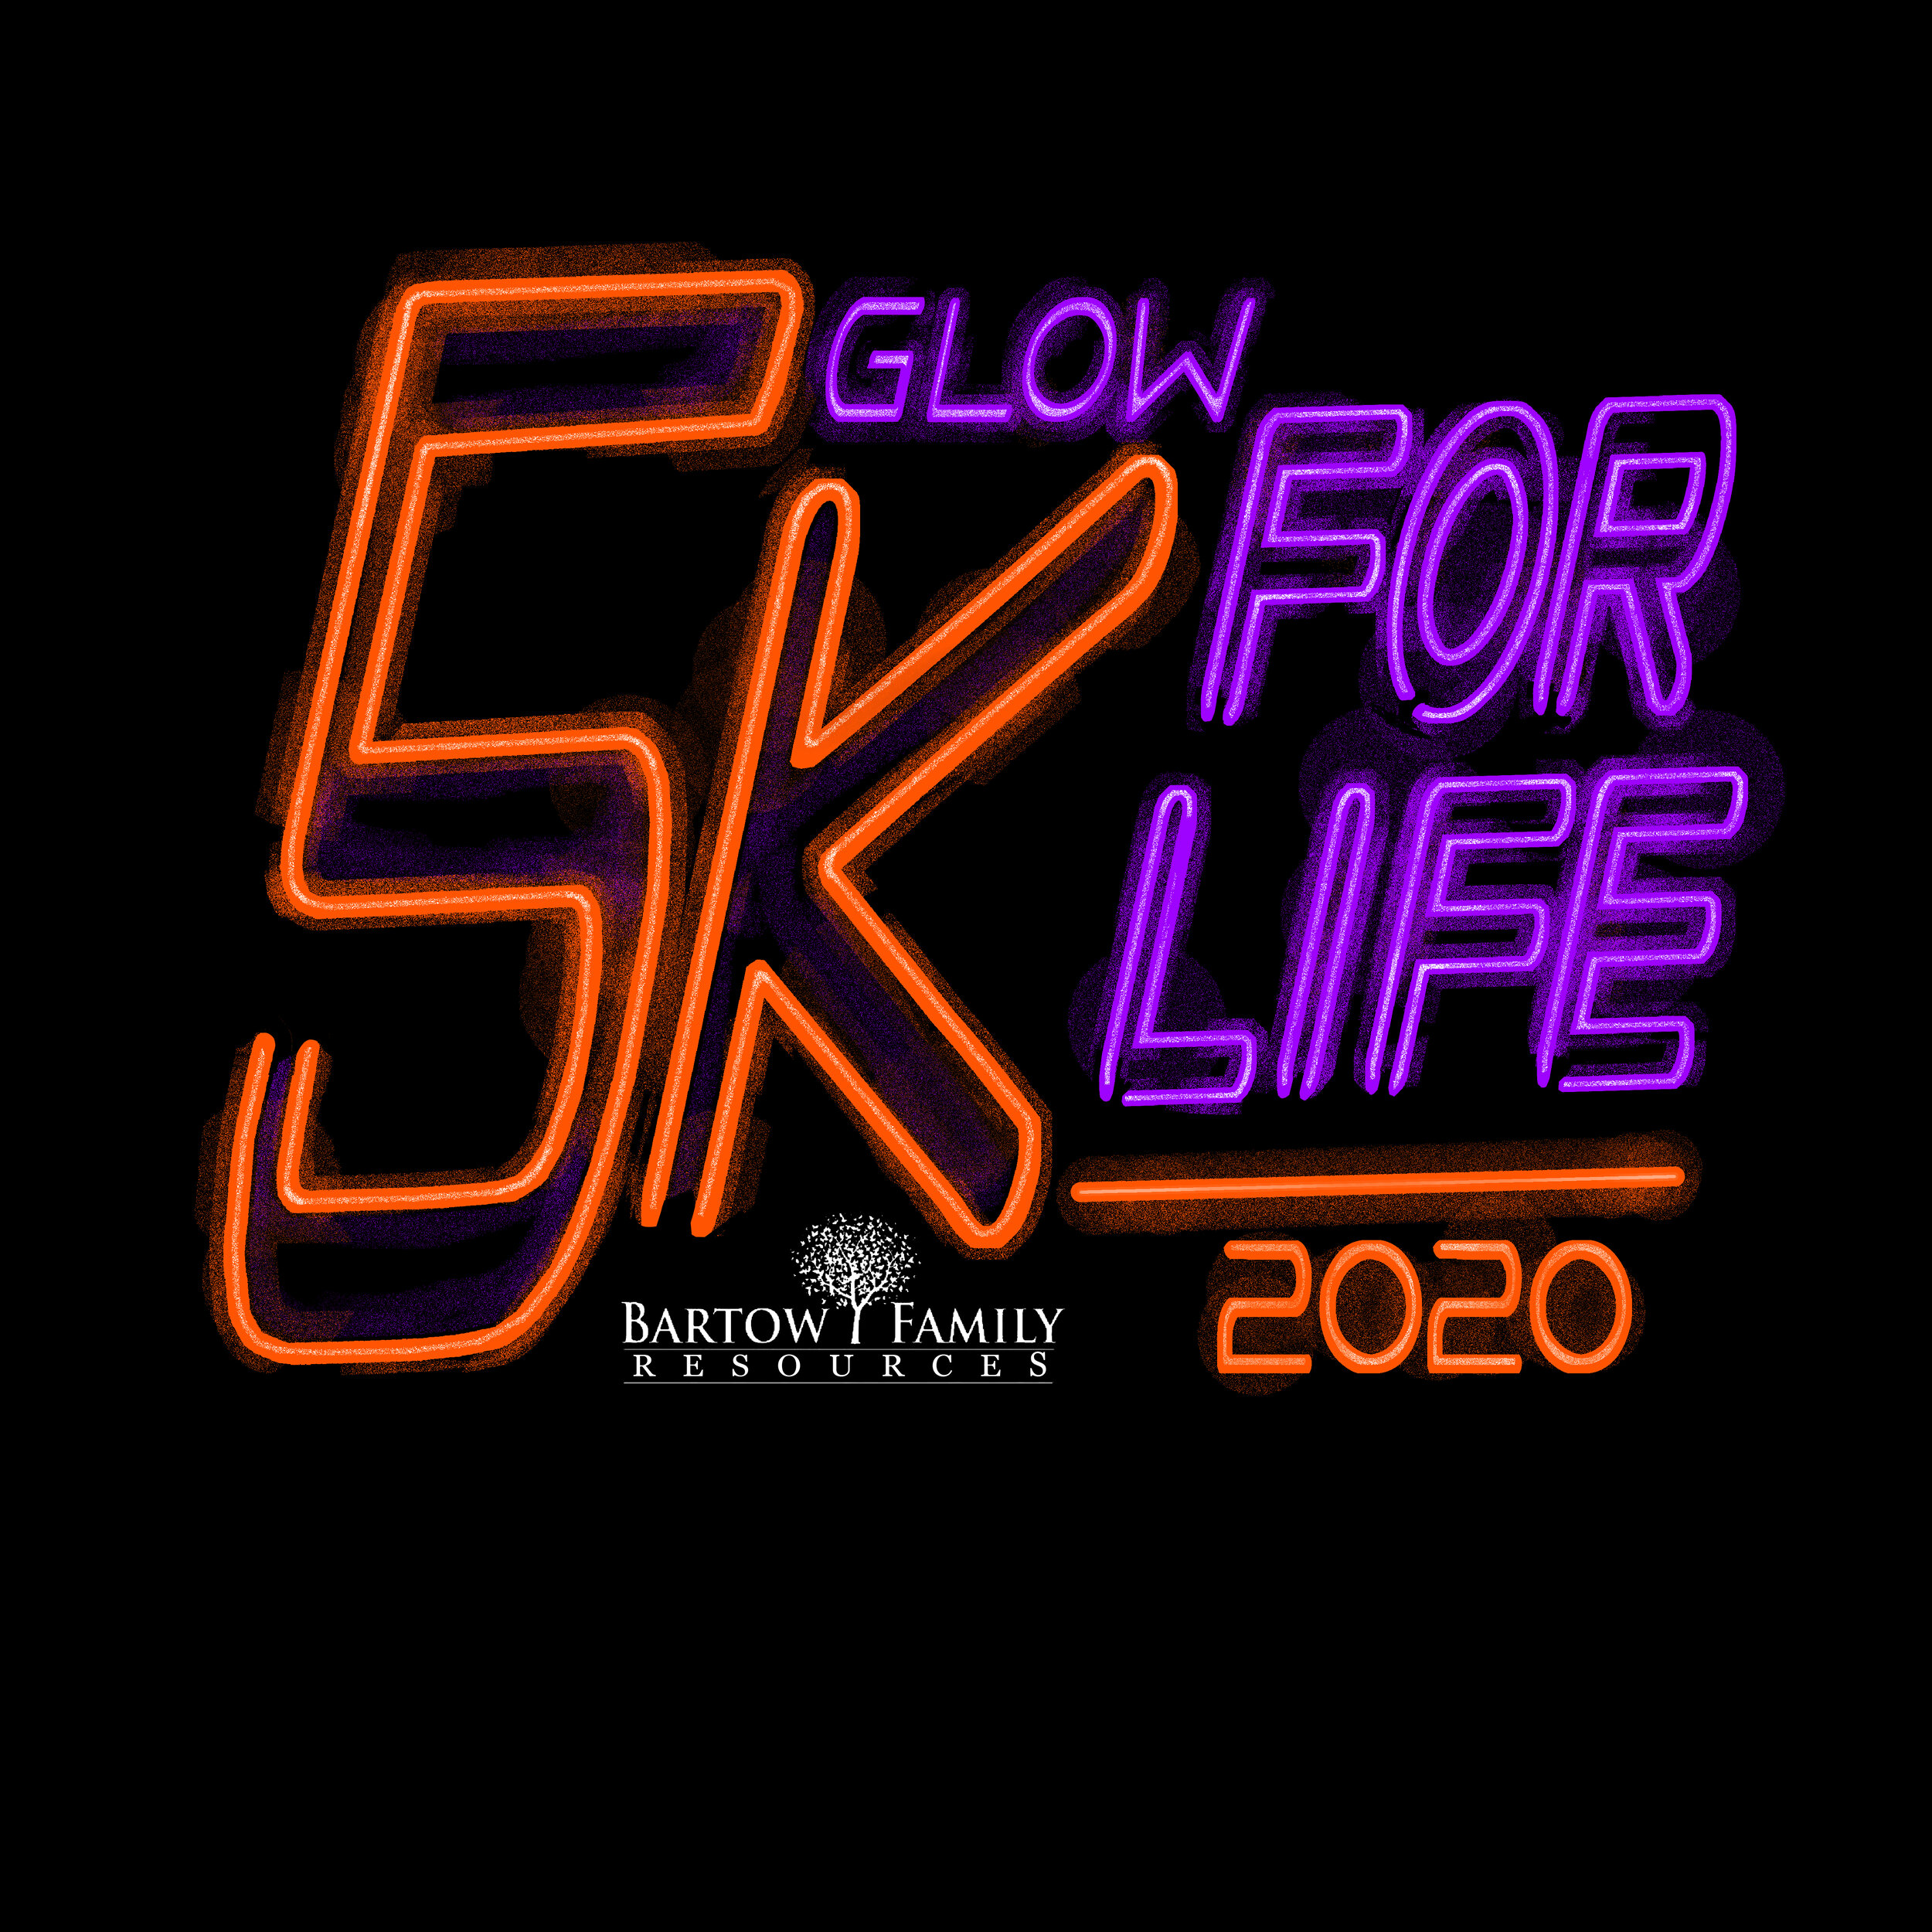 5K FOR LIFE logo 2020.jpg